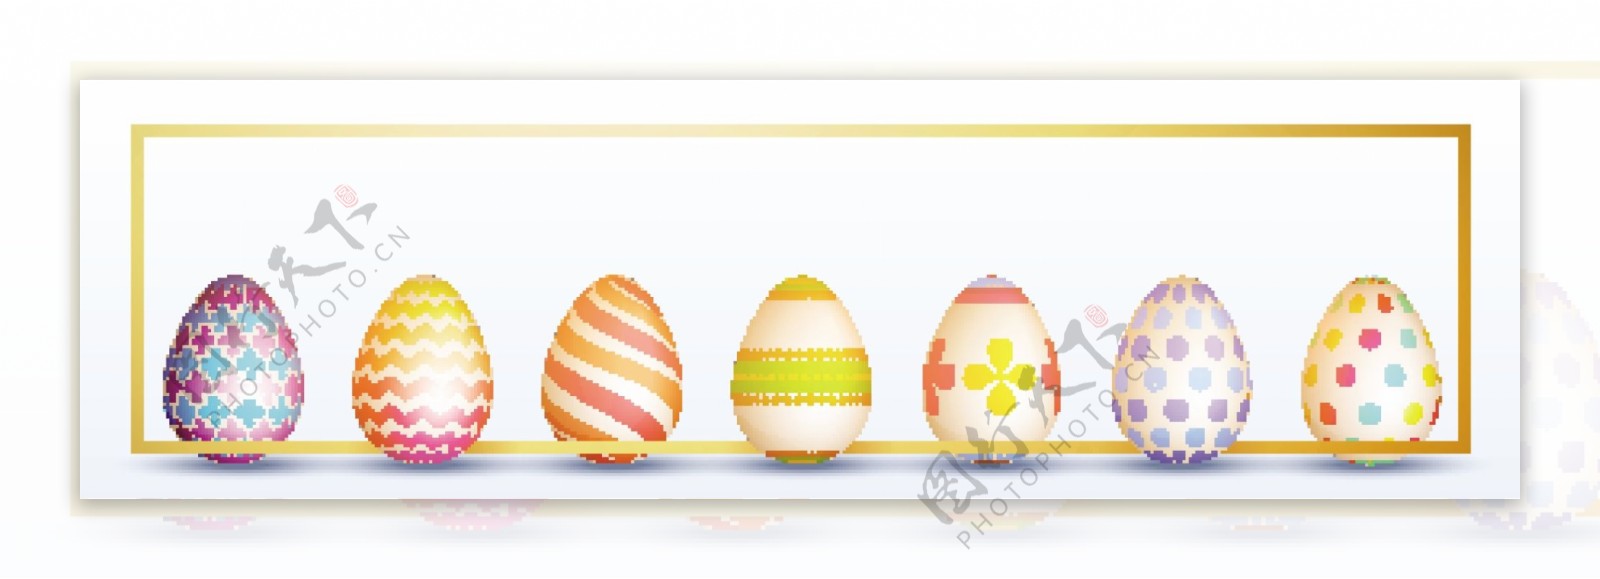 复活节彩蛋装饰横幅